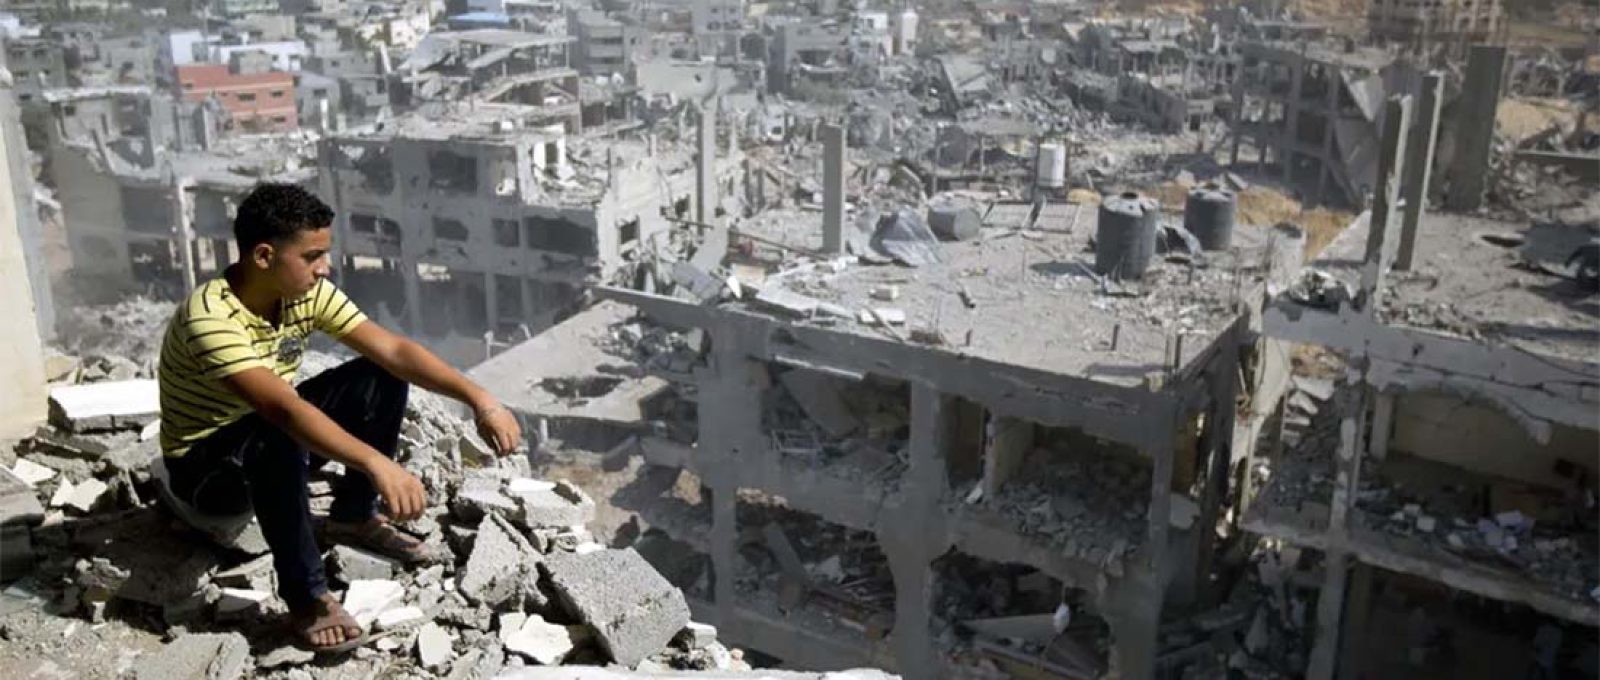 Palestino observa a destruição no bairro de Al-Tufah, na cidade de Gaza (Mahmud Hams/AFP/Getty Images).